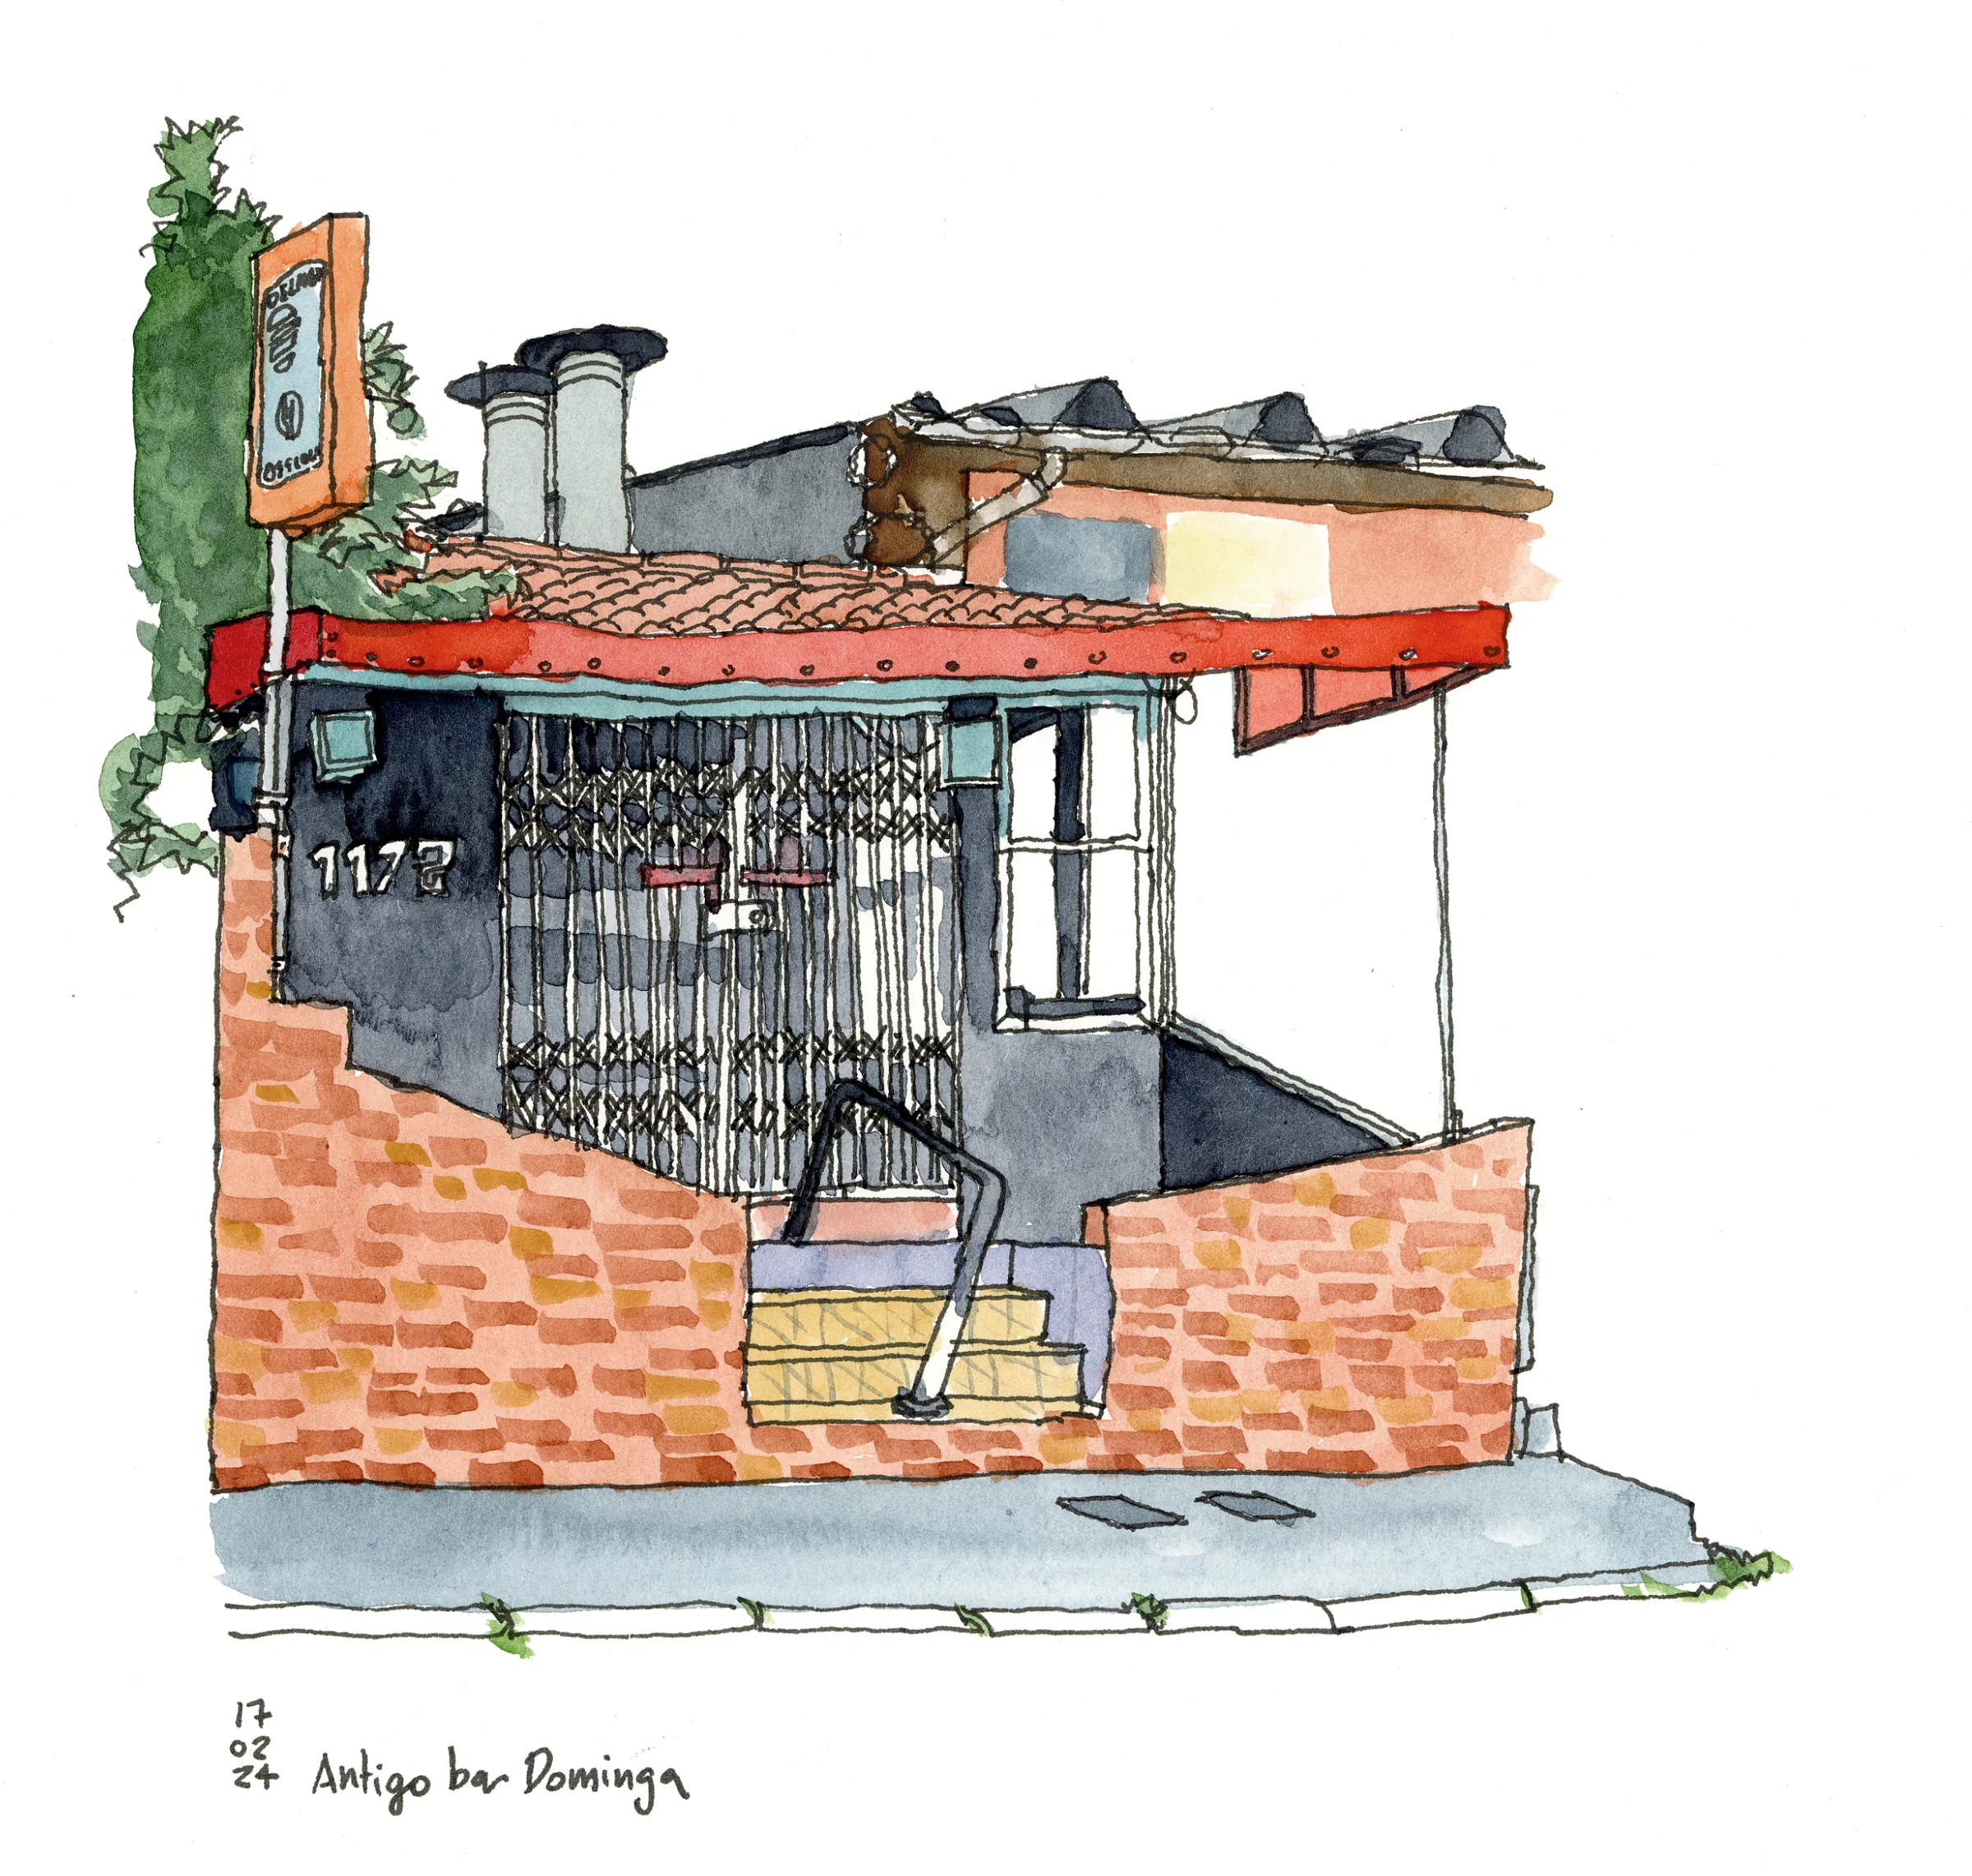 Desenho colorido de um estabelecimento que vende hambúrgueres. O acesso é feito por uma pequena escada e a porta tem a grade fechada